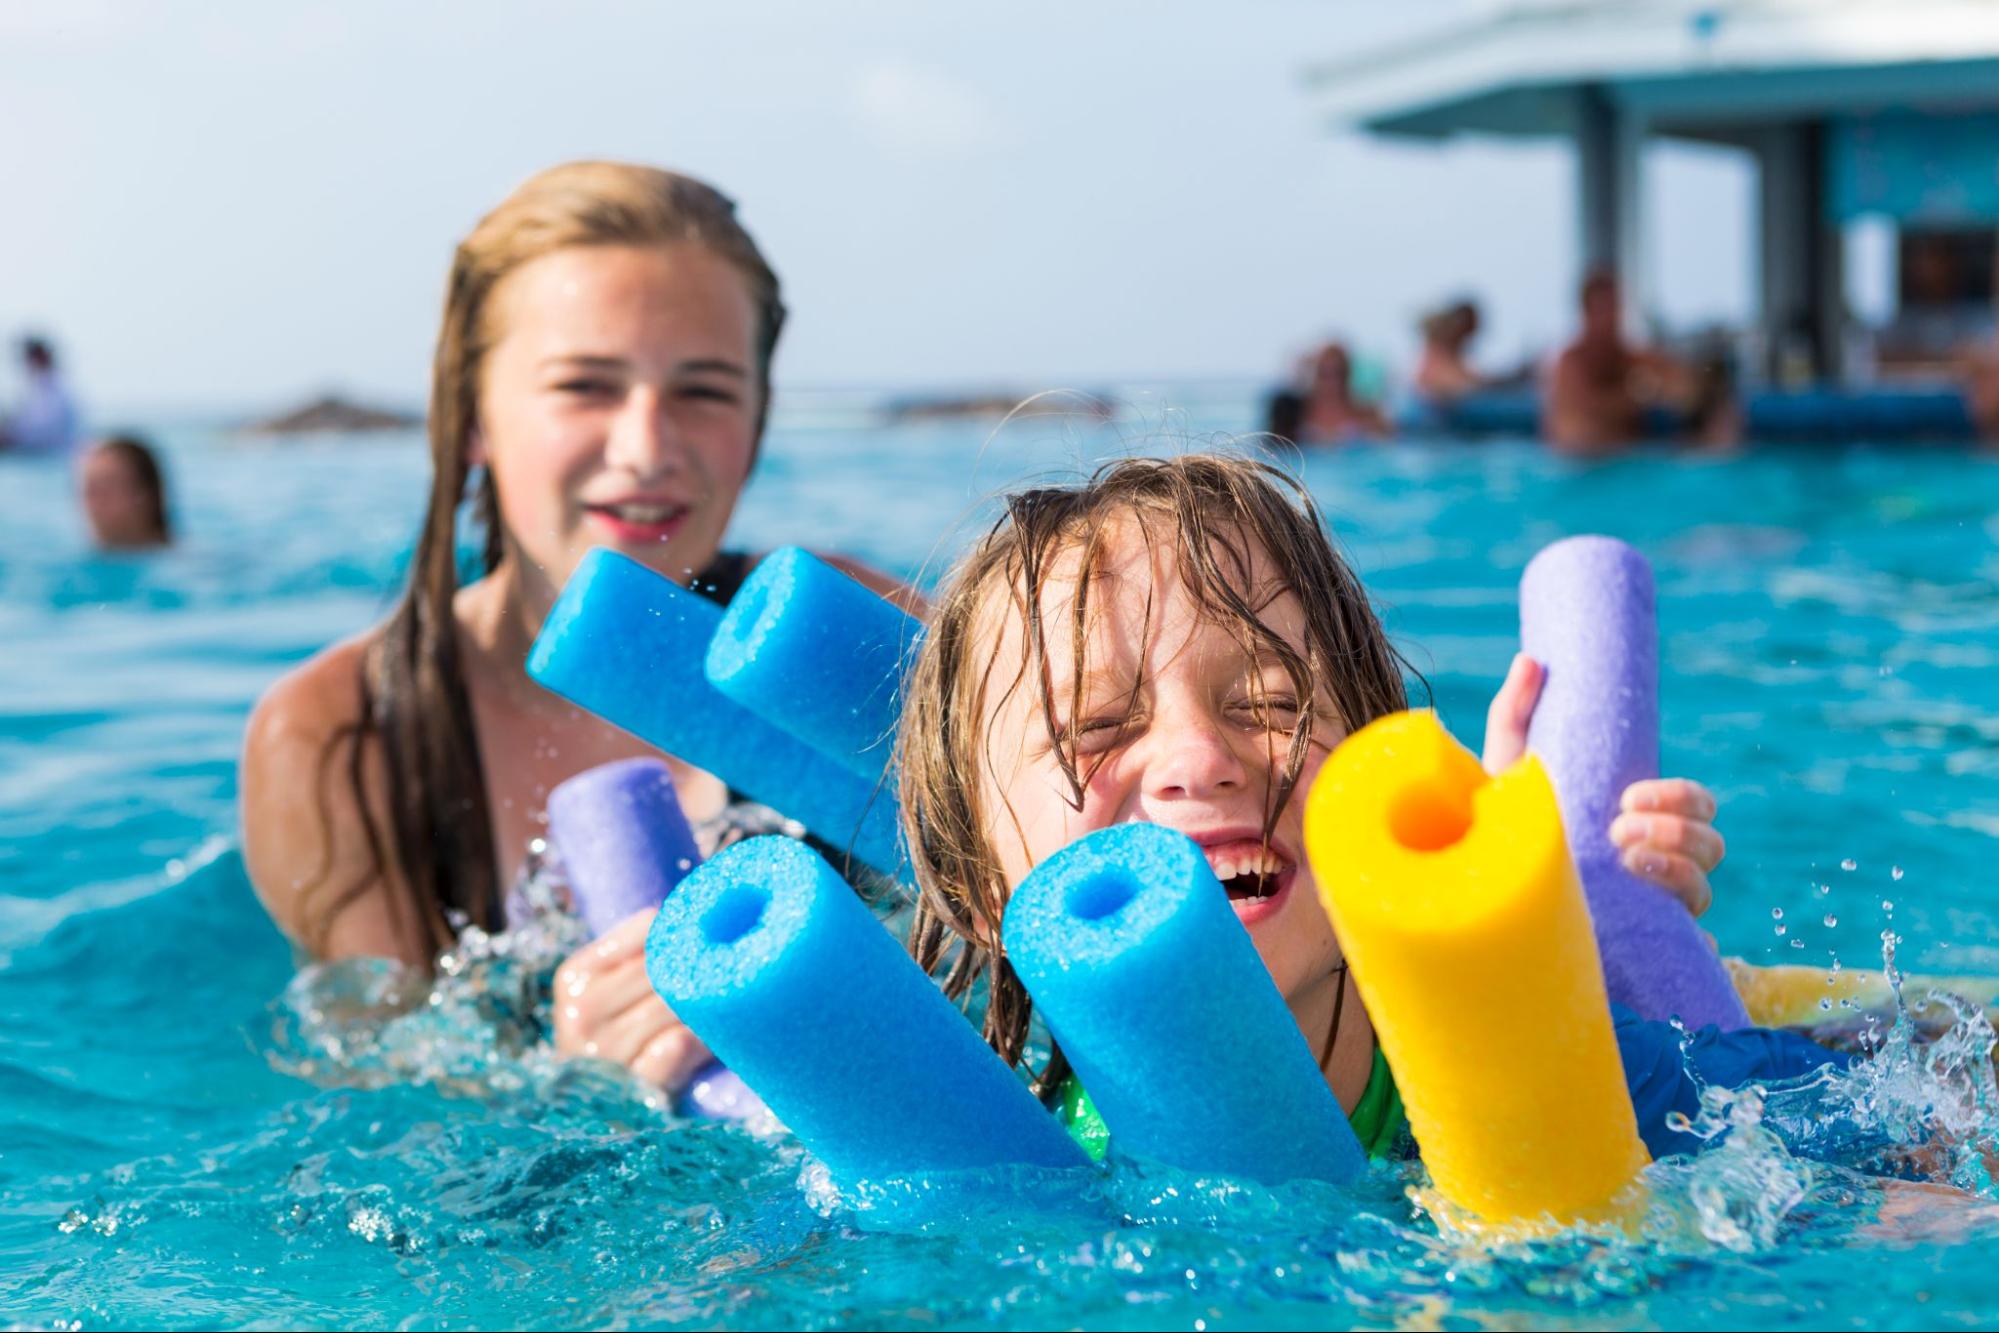 Día de piscina: qué hacer, qué llevar y consejos para disfrutar con los más pequeños